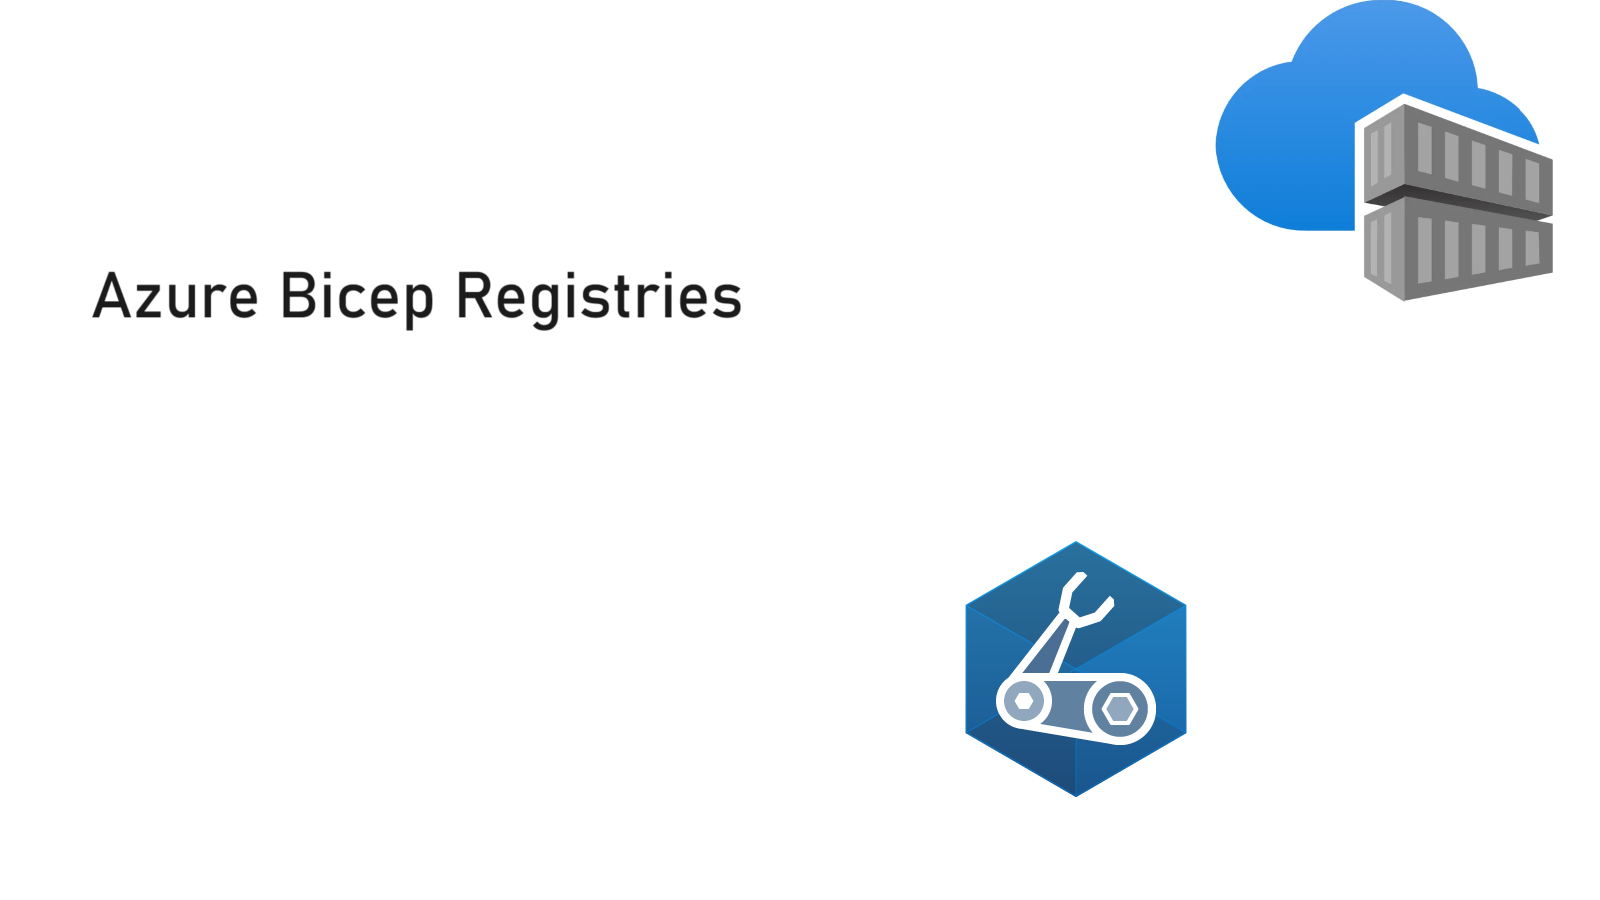 Azure Bicep Registries